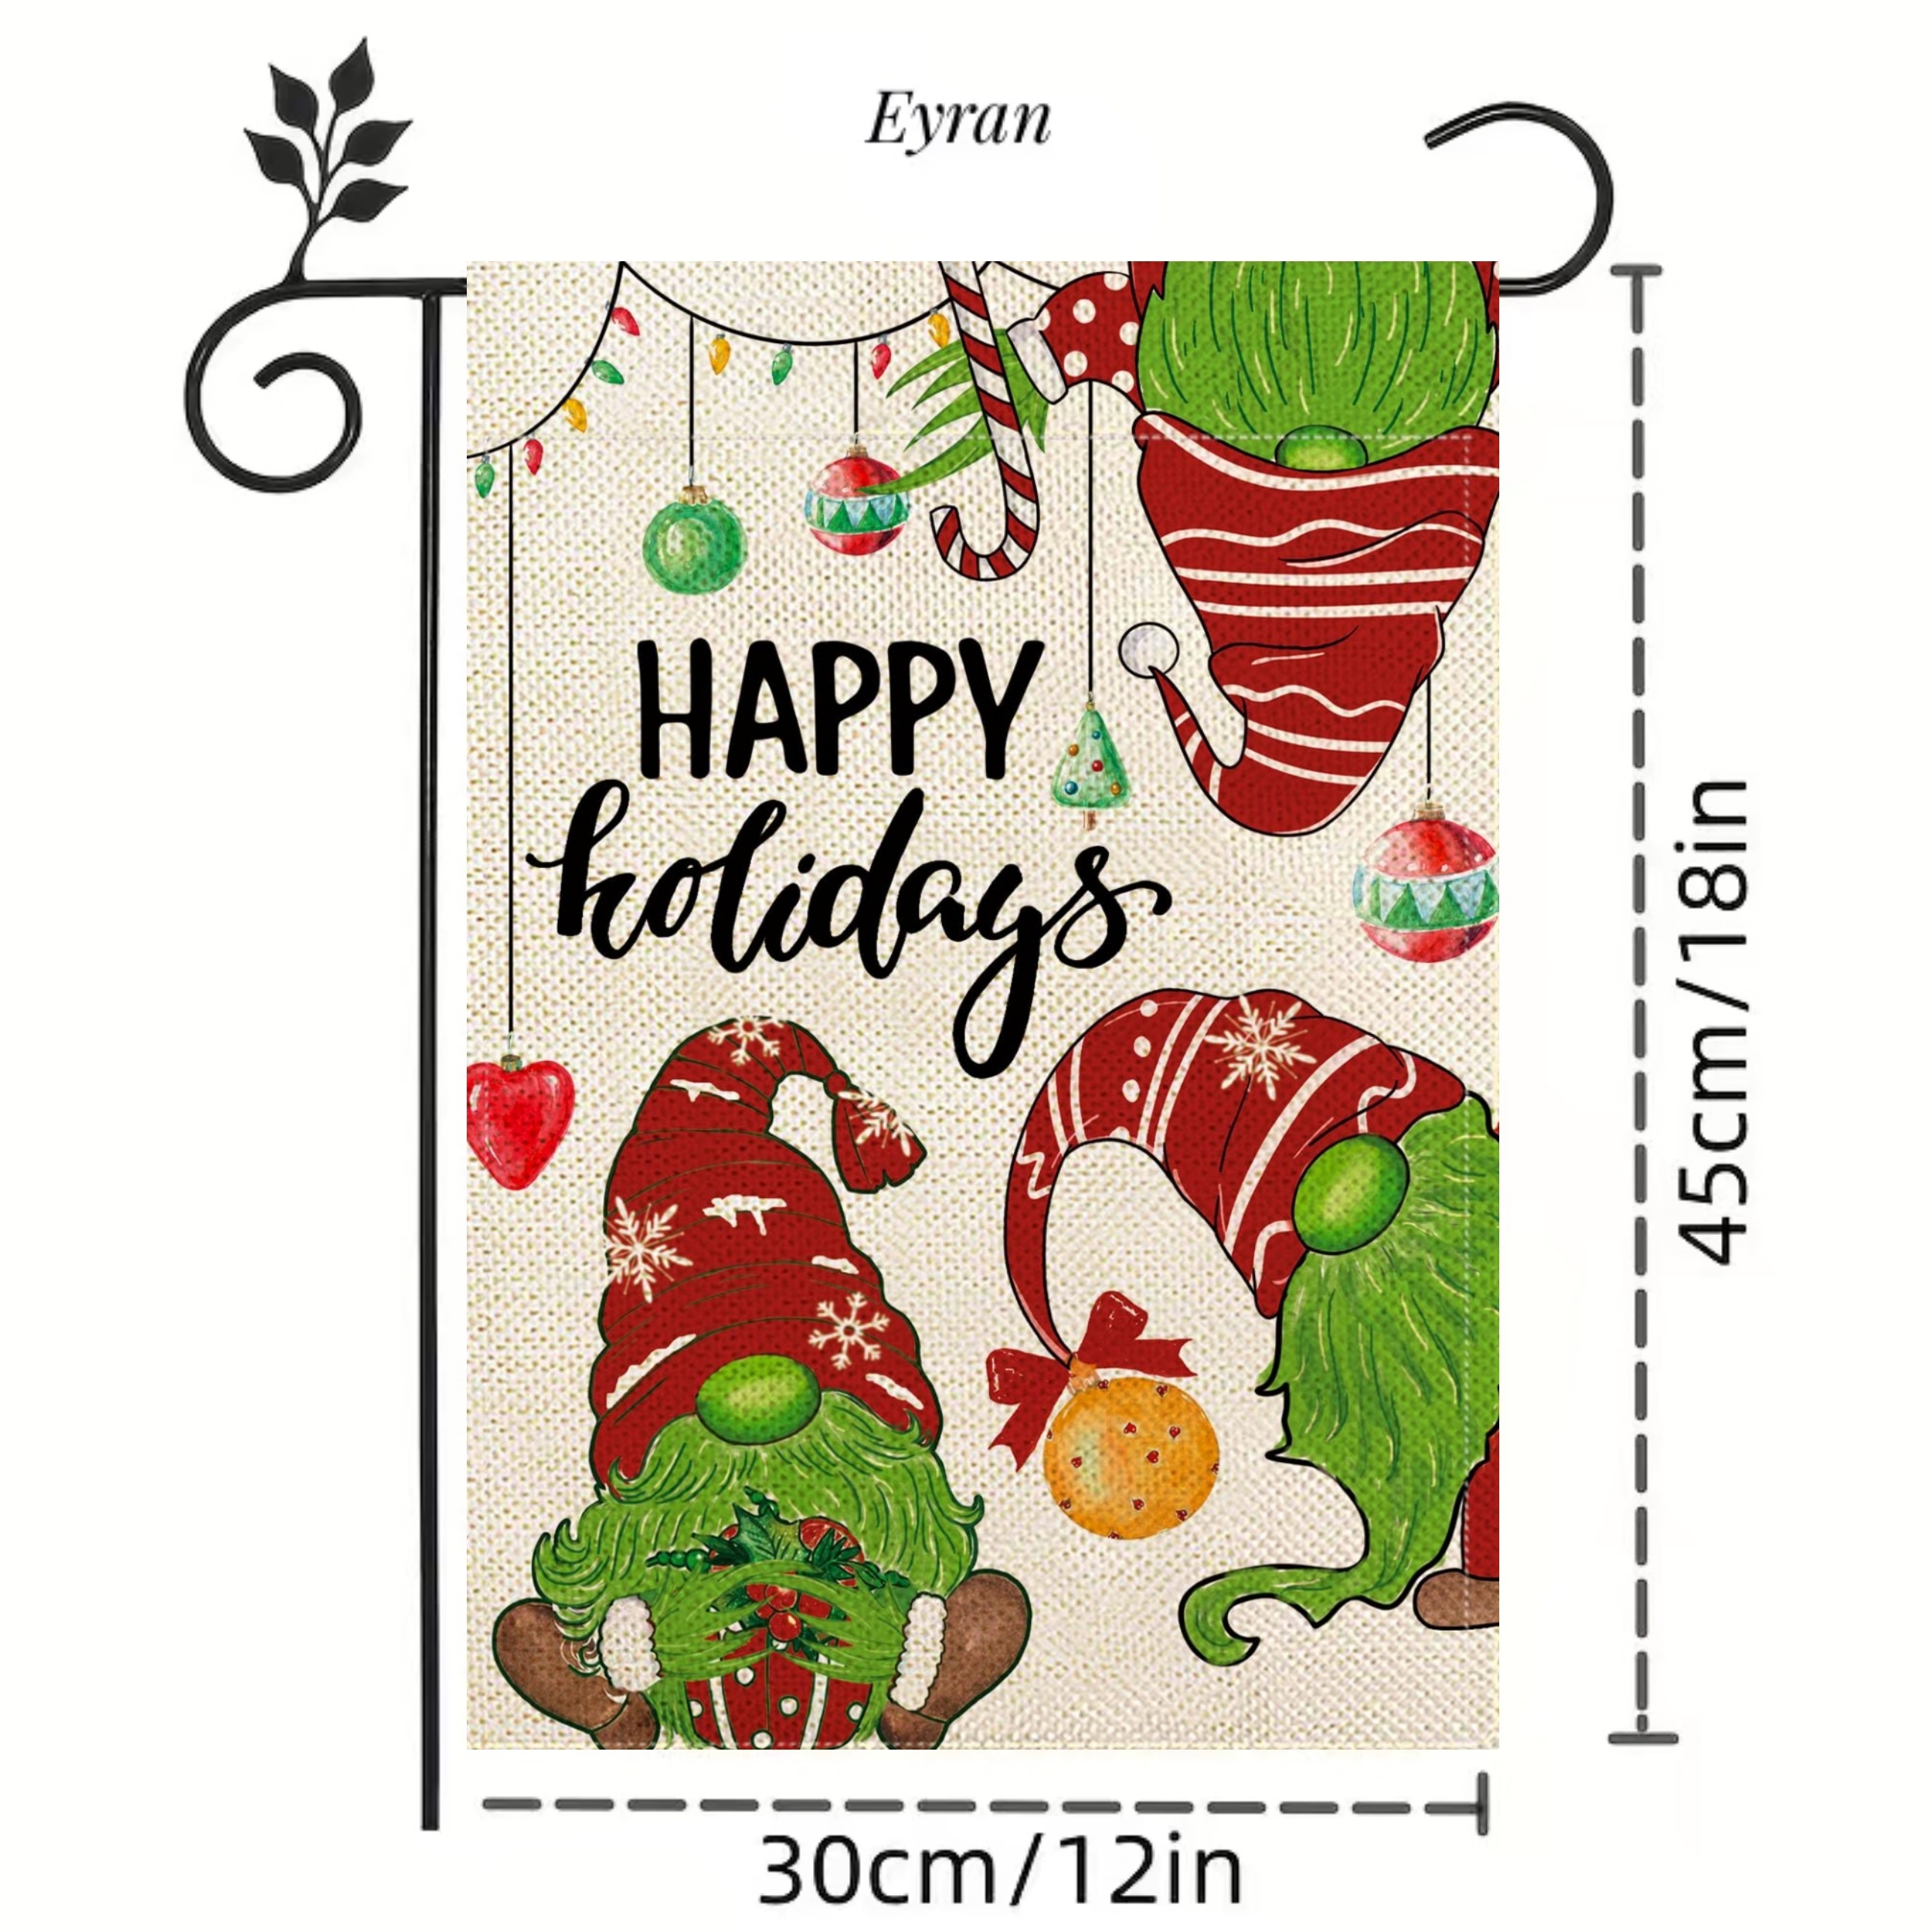 Merry Grinch Garden Flag: Christmas Grinch Yard Flag 12X18 Inch